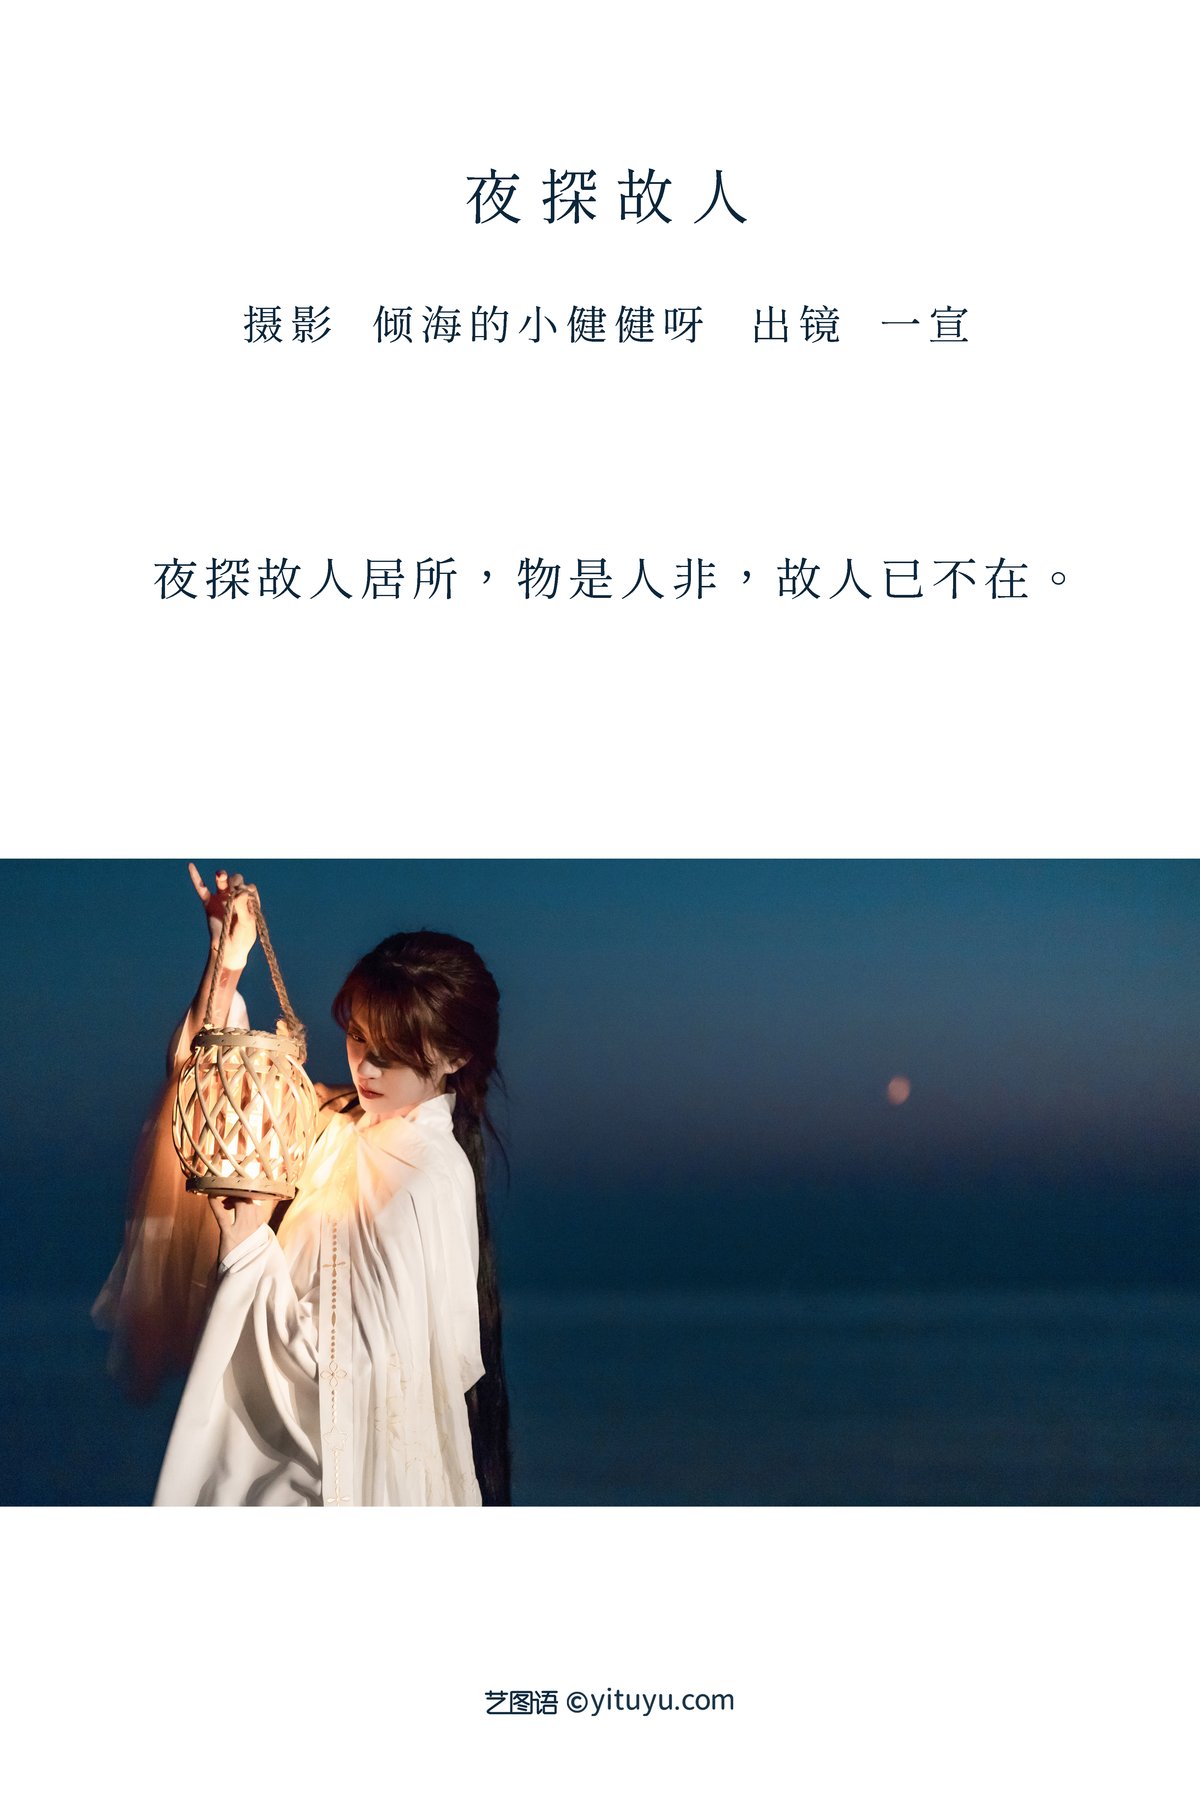 YiTuYu艺图语 Vol 2905 Yi Xuan 0001 4133889783.jpg